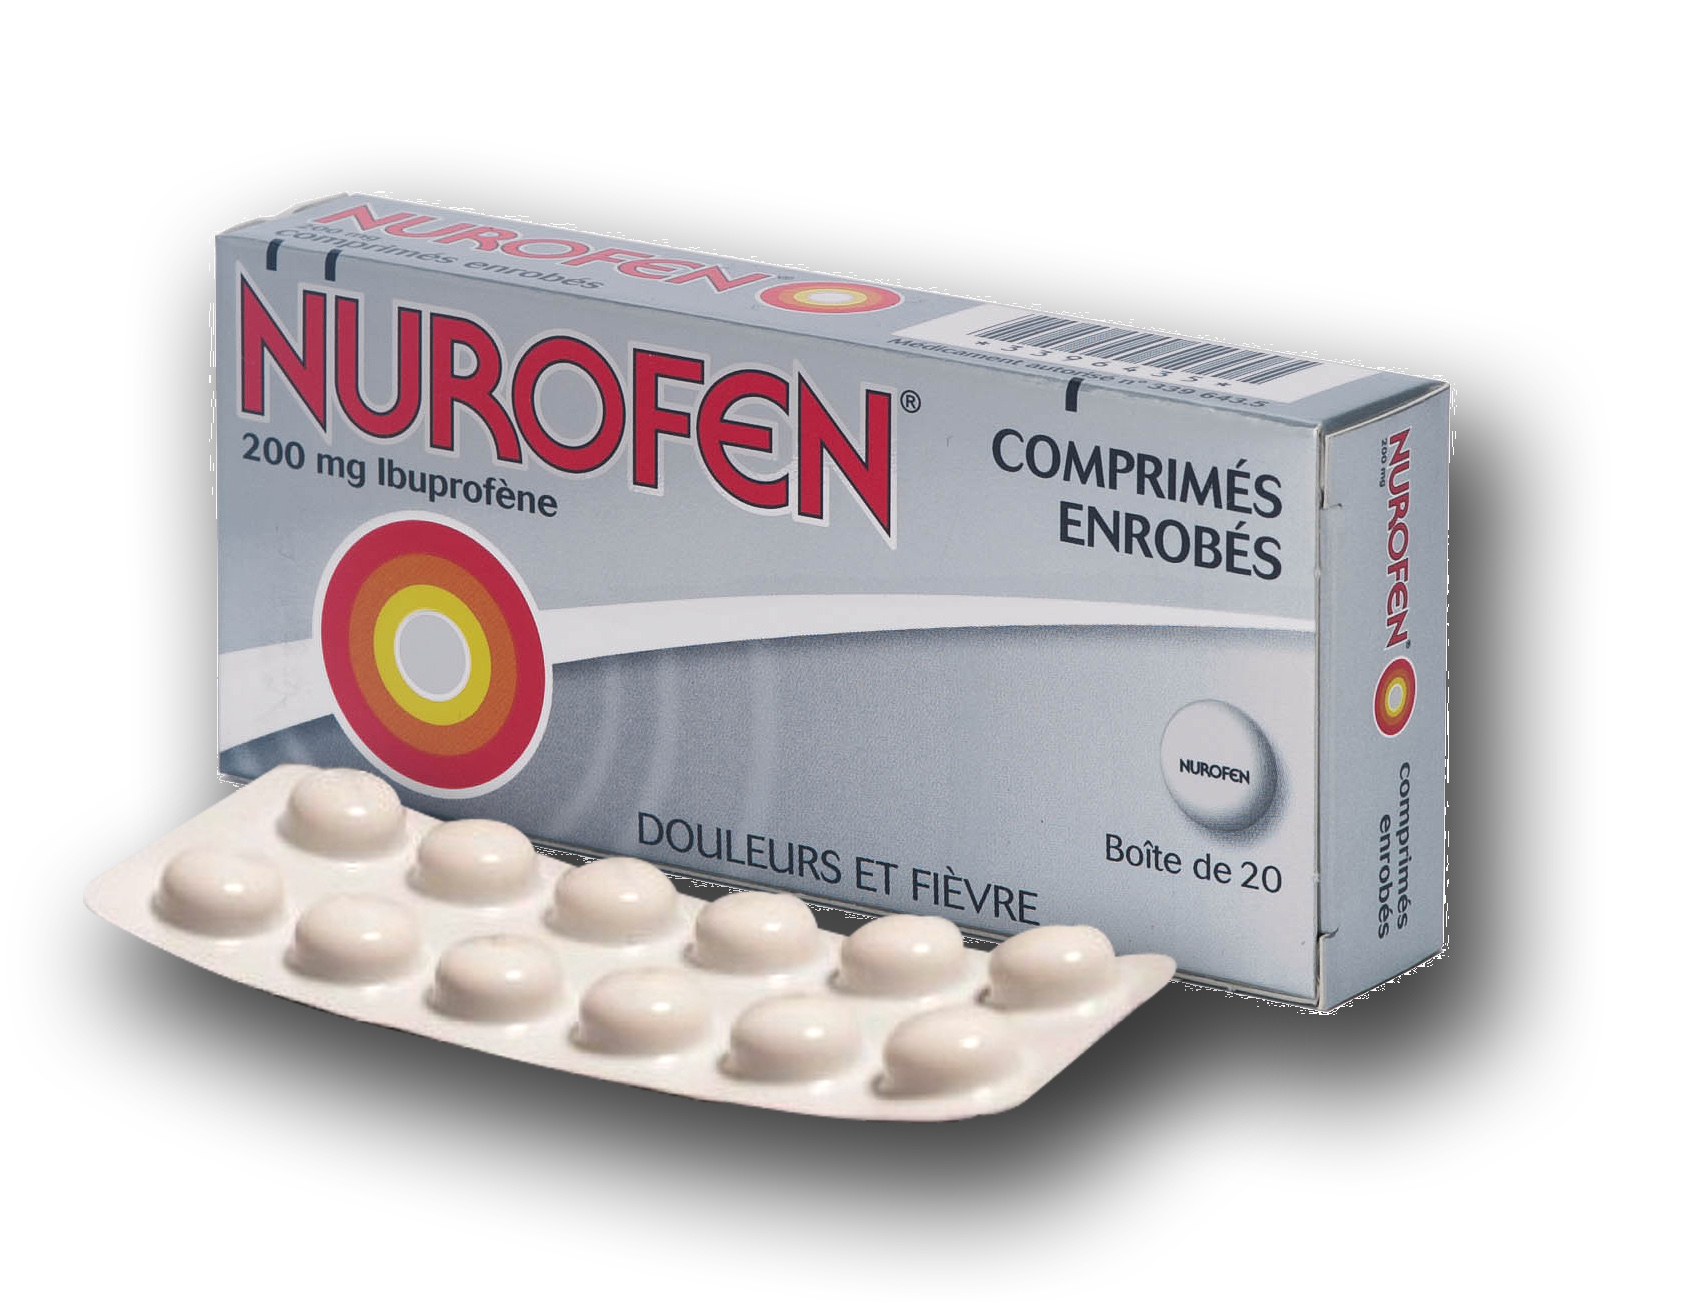 Visuel de l'emballage du médicament NUROFEN 200mg Ibuprofène.